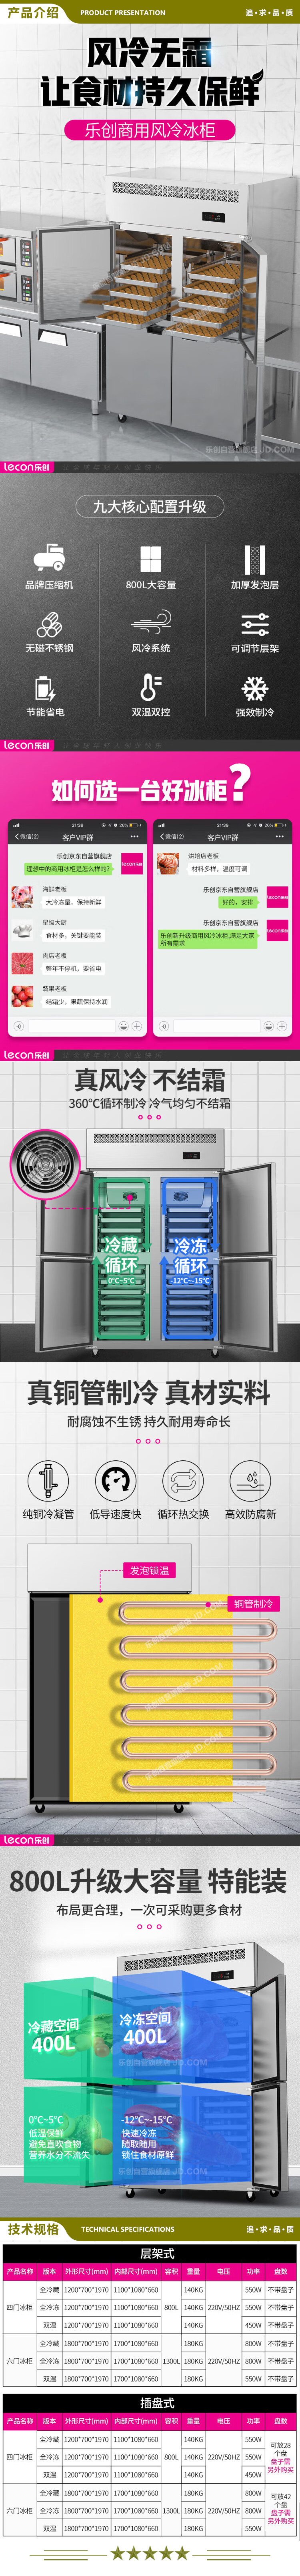 乐创(lecon) LC-SMBG01 双温商用四门冰柜厨房冰箱双温冷藏冷冻餐饮立式后厨保鲜柜冷柜风冷插盘式  2.jpg